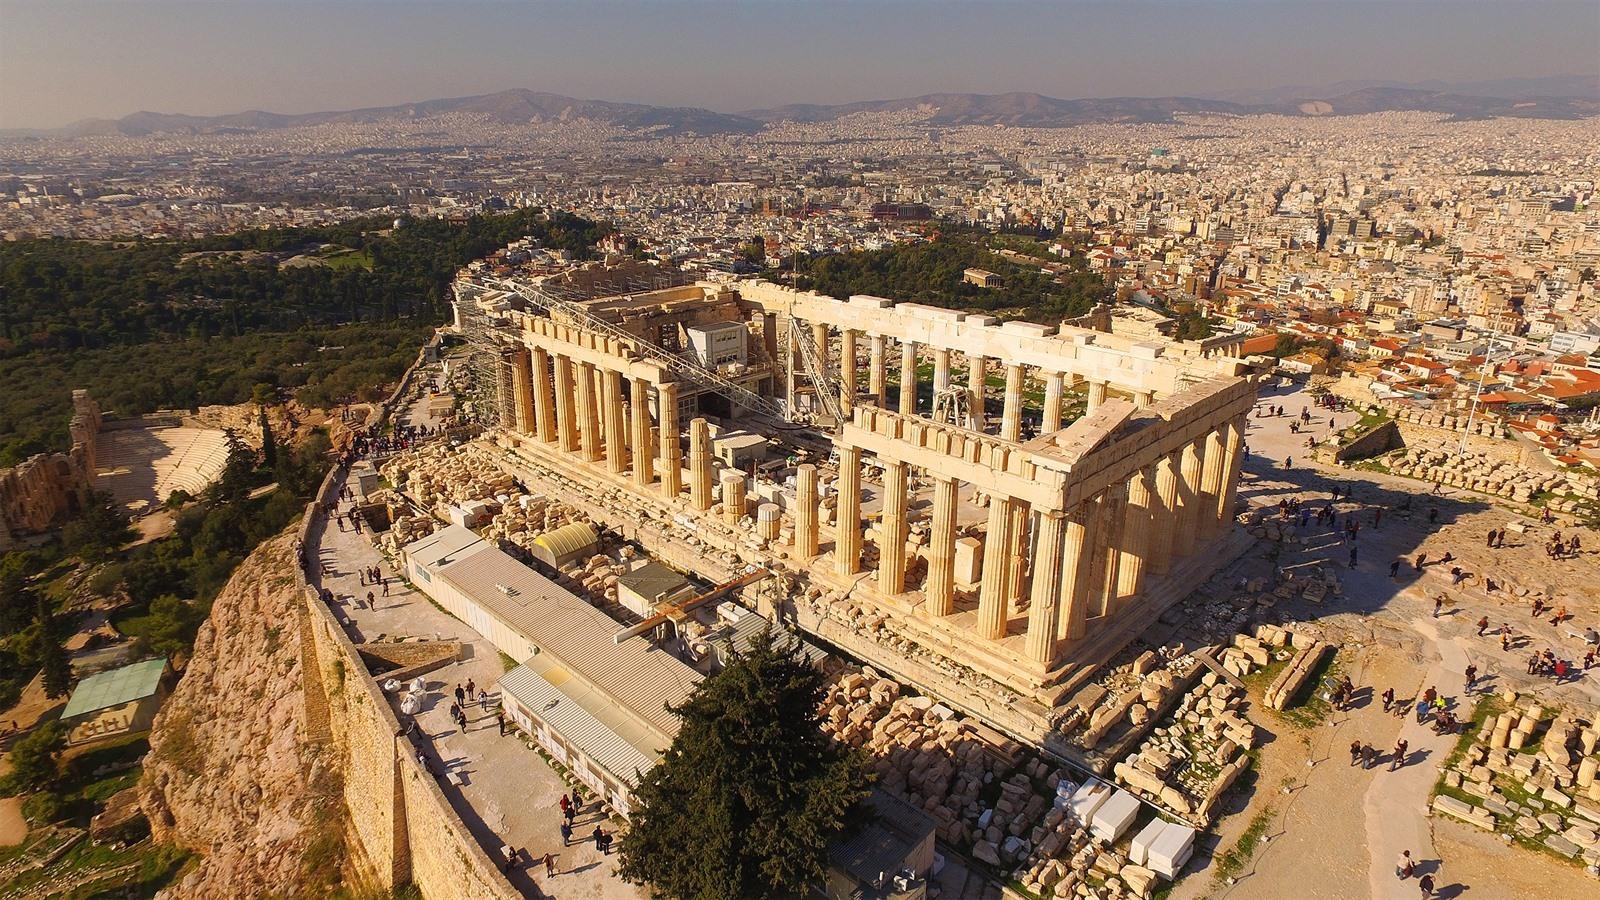 Akropolis van Athene bezoeken? Handige tips - VakantieDiscounter